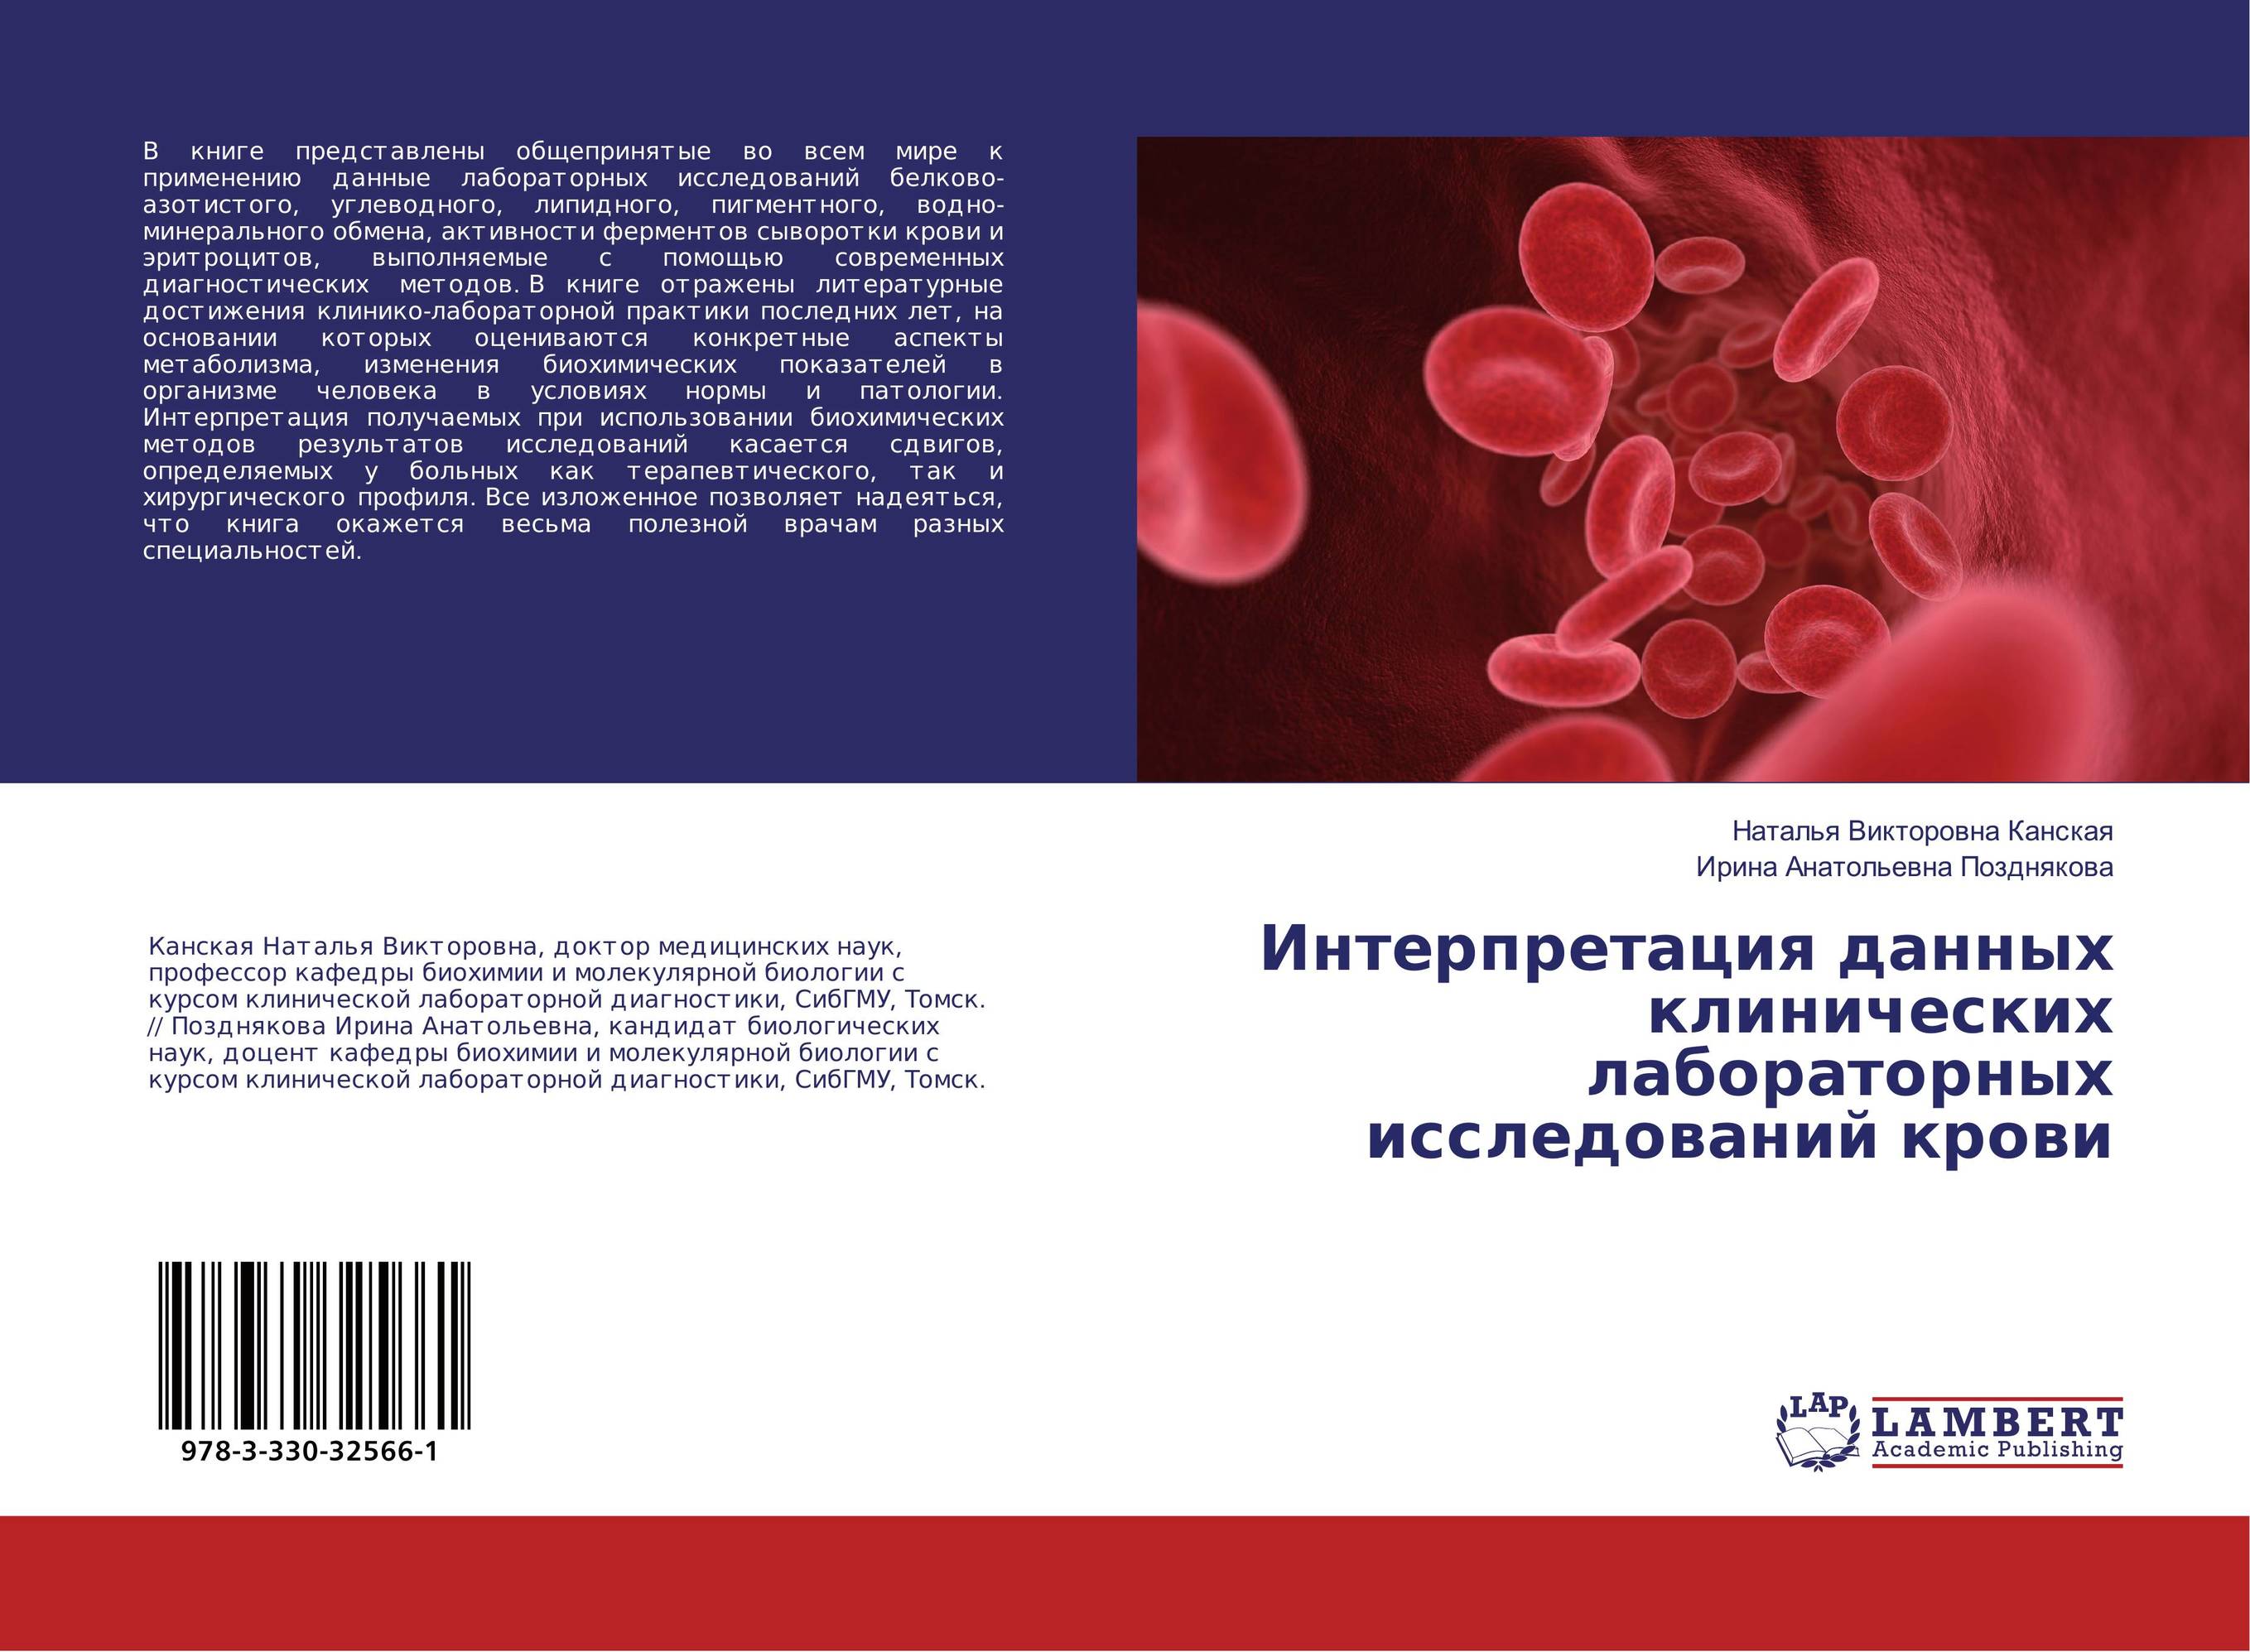 
        Интерпретация данных клинических лабораторных исследований крови..
      